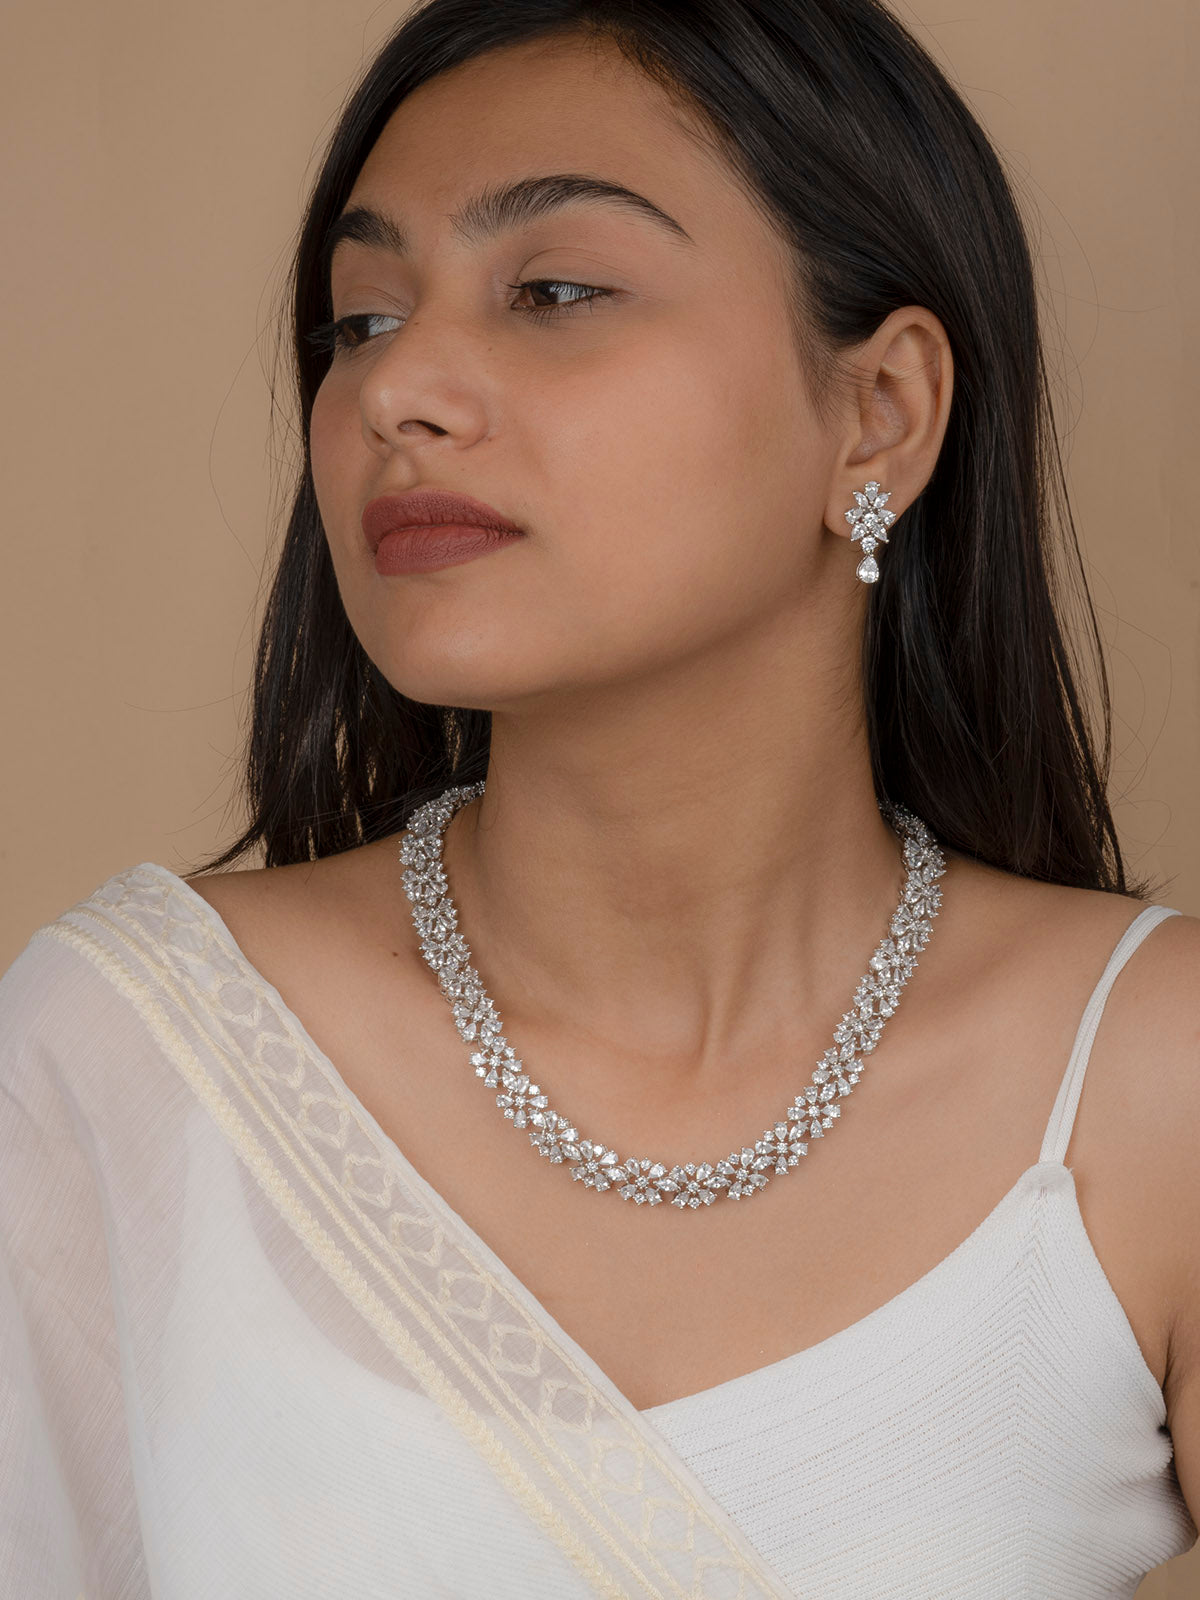 CZSET219 - White Color Faux Diamond Delicate Medium Necklace Set